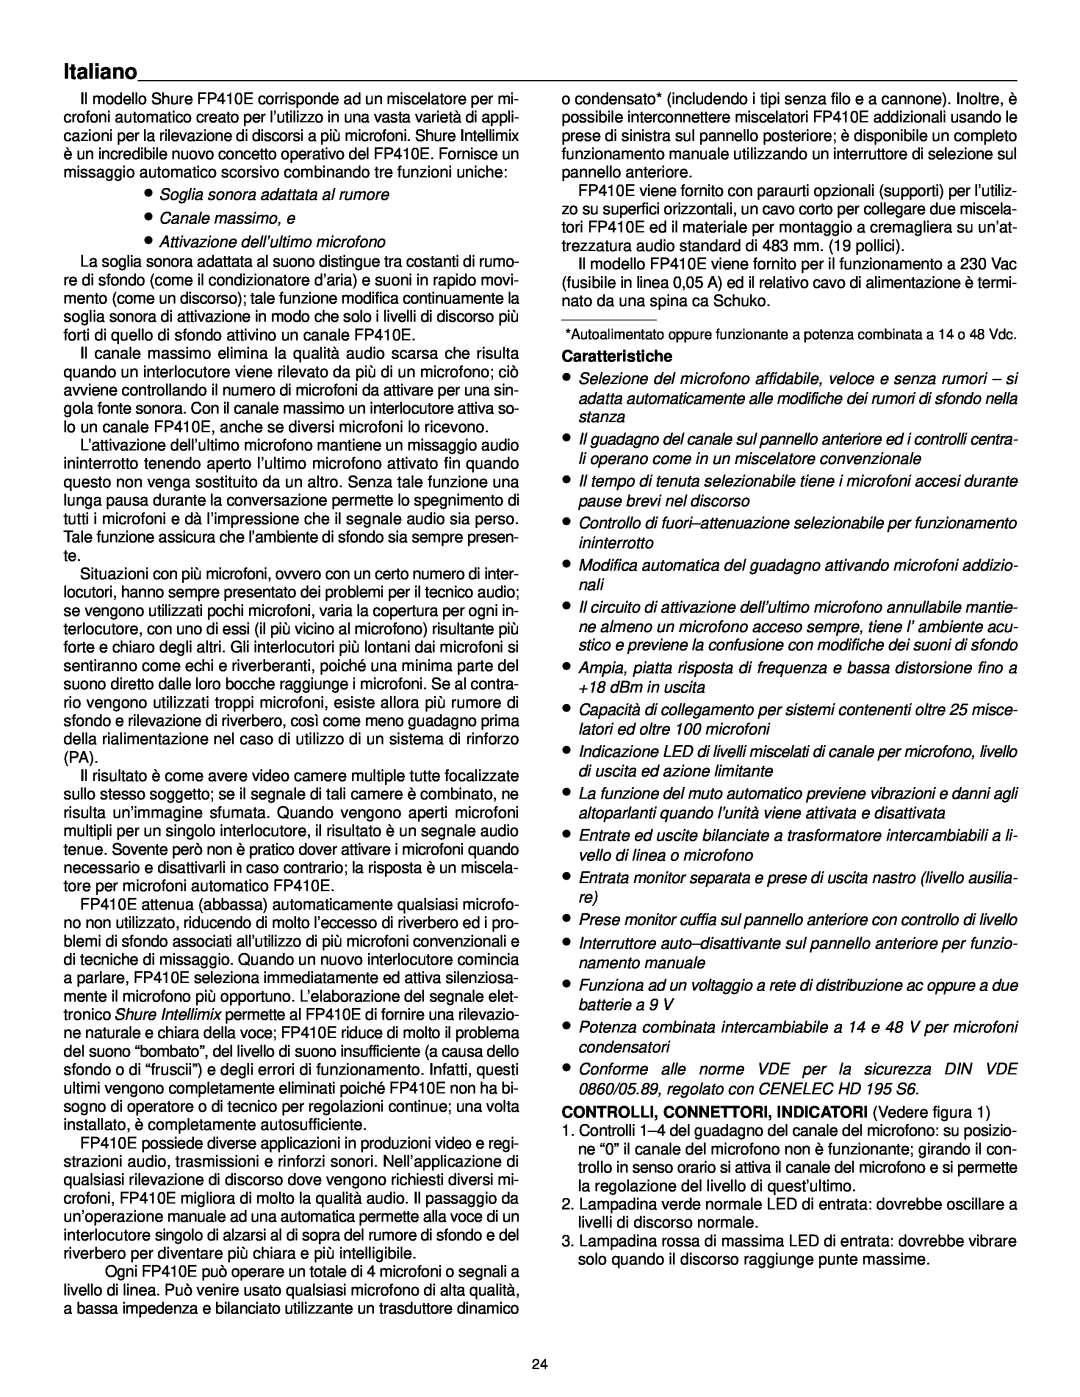 Shure FP410 manual Italiano, Caratteristiche, CONTROLLI, CONNETTORI, INDICATORI Vedere figura 